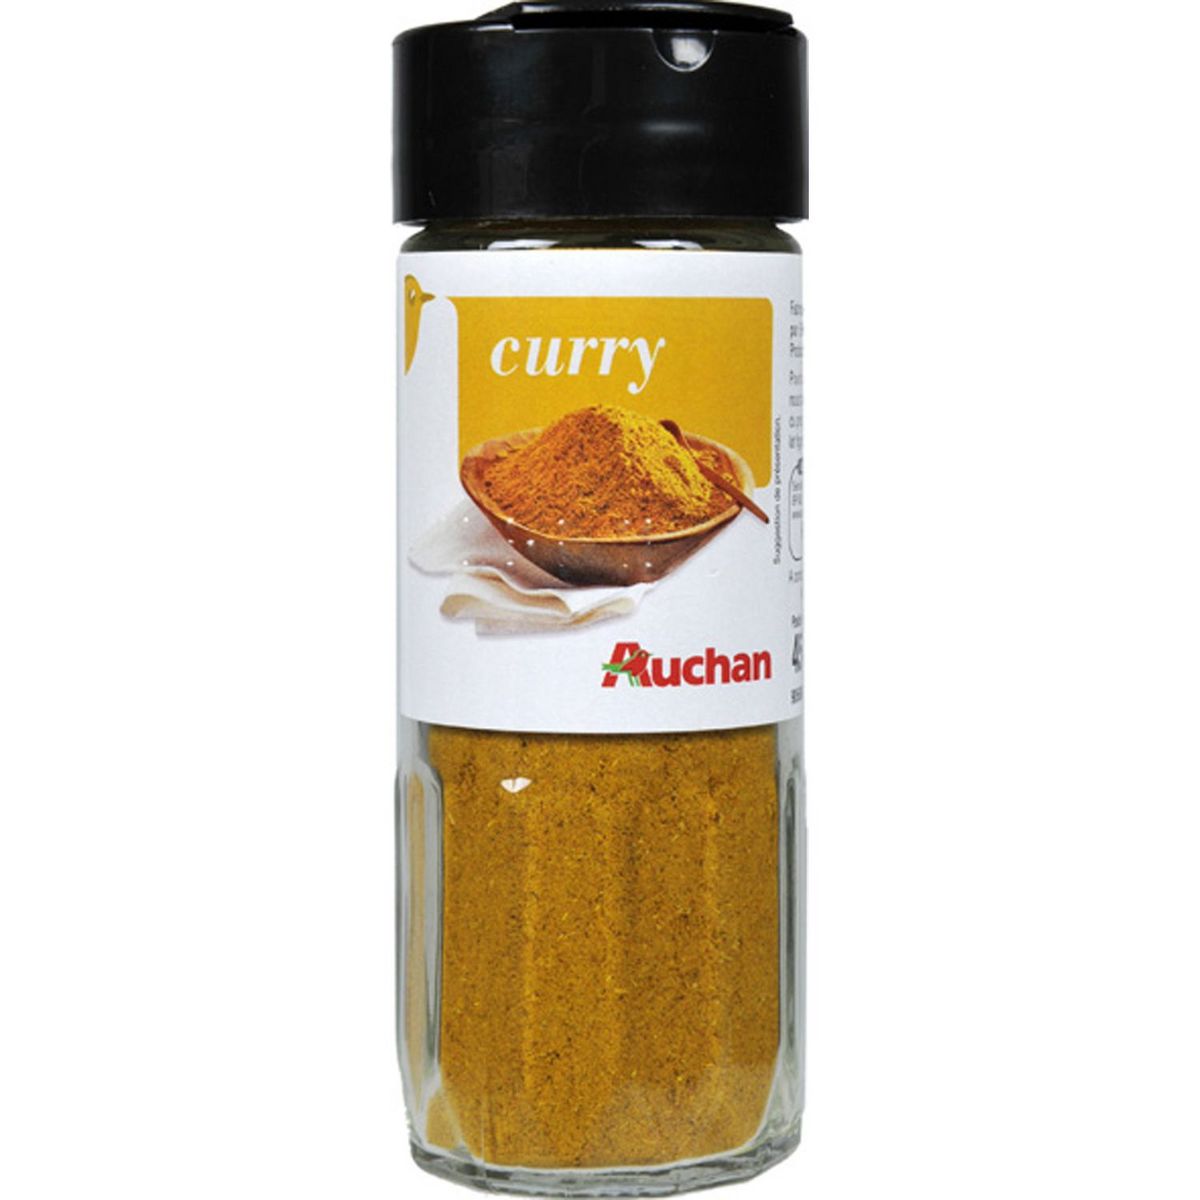 AUCHAN Curry 45g